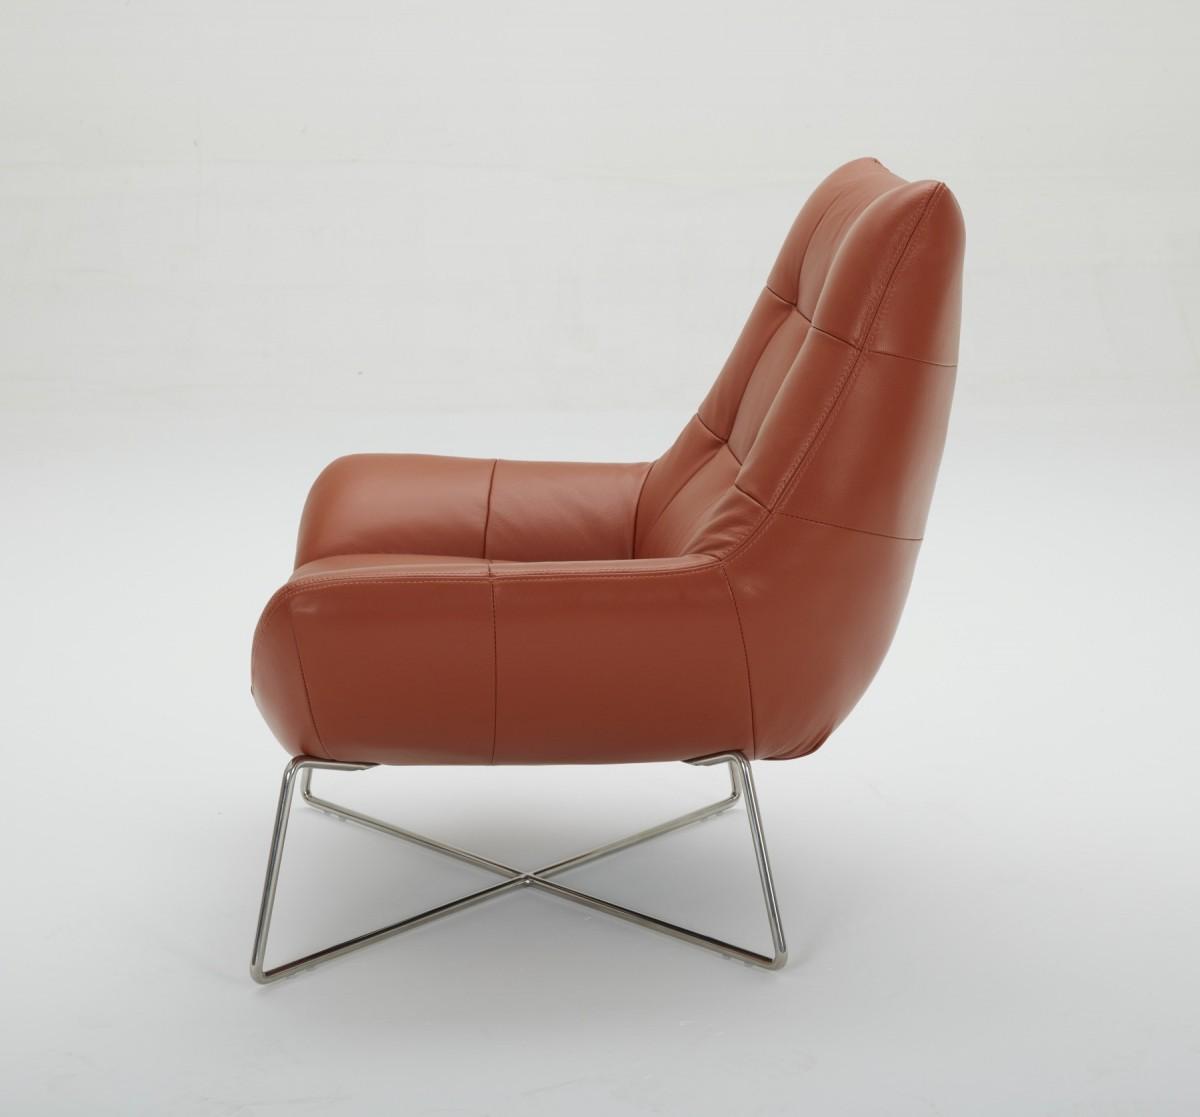 Contemporary, Modern Lounge Chair Set VGKK-A-728-ORG-Set-2 VGKK-A-728-ORG-Set-2 in Orange Full Leather